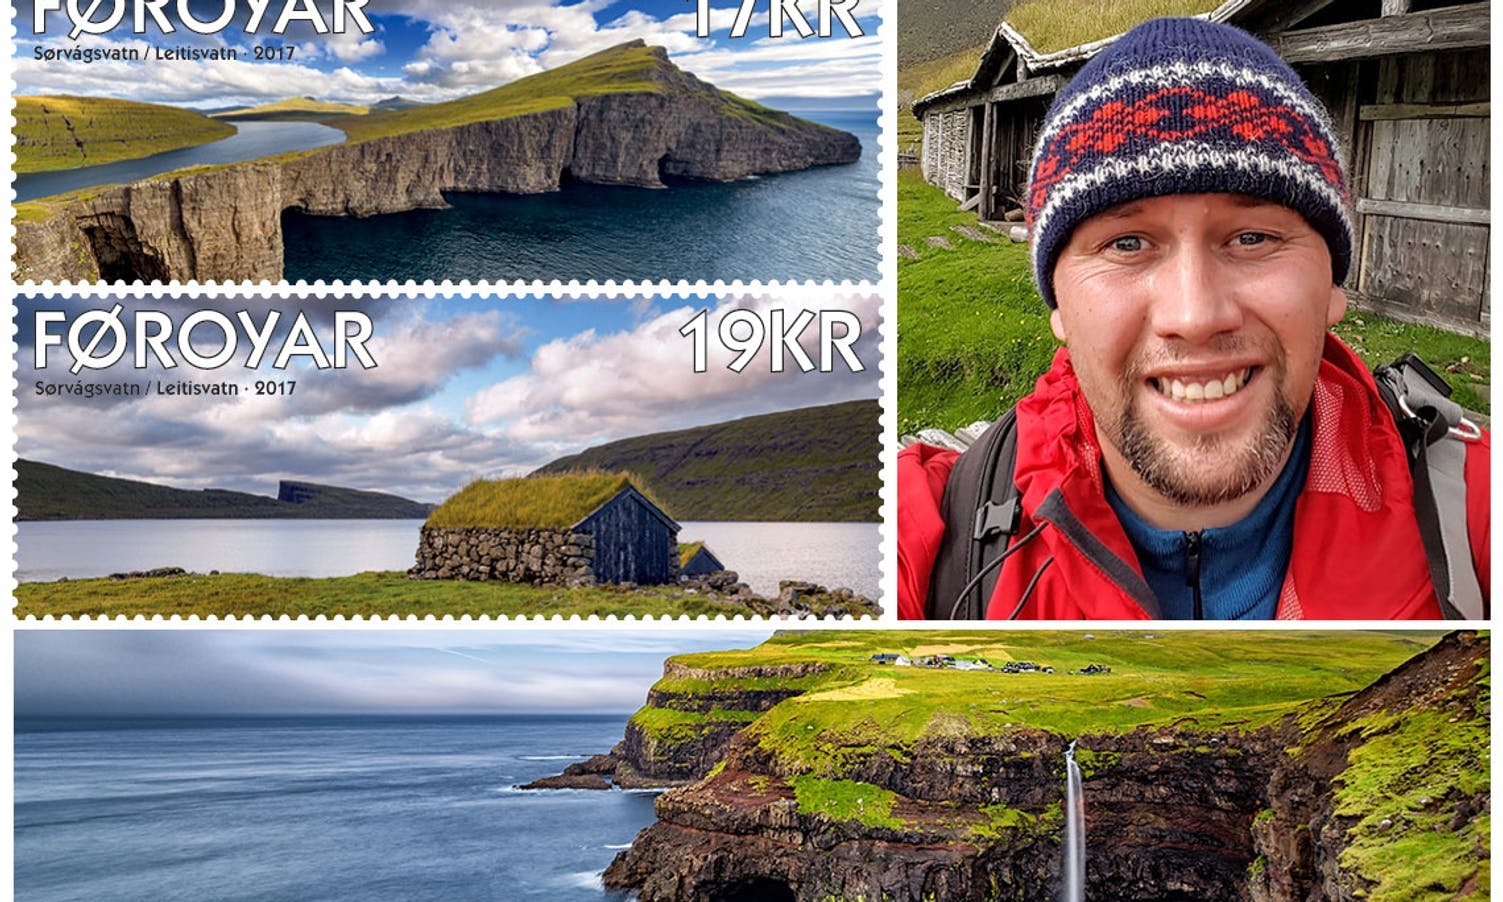 Eirik sine bilde blir frimerke på Færøyene